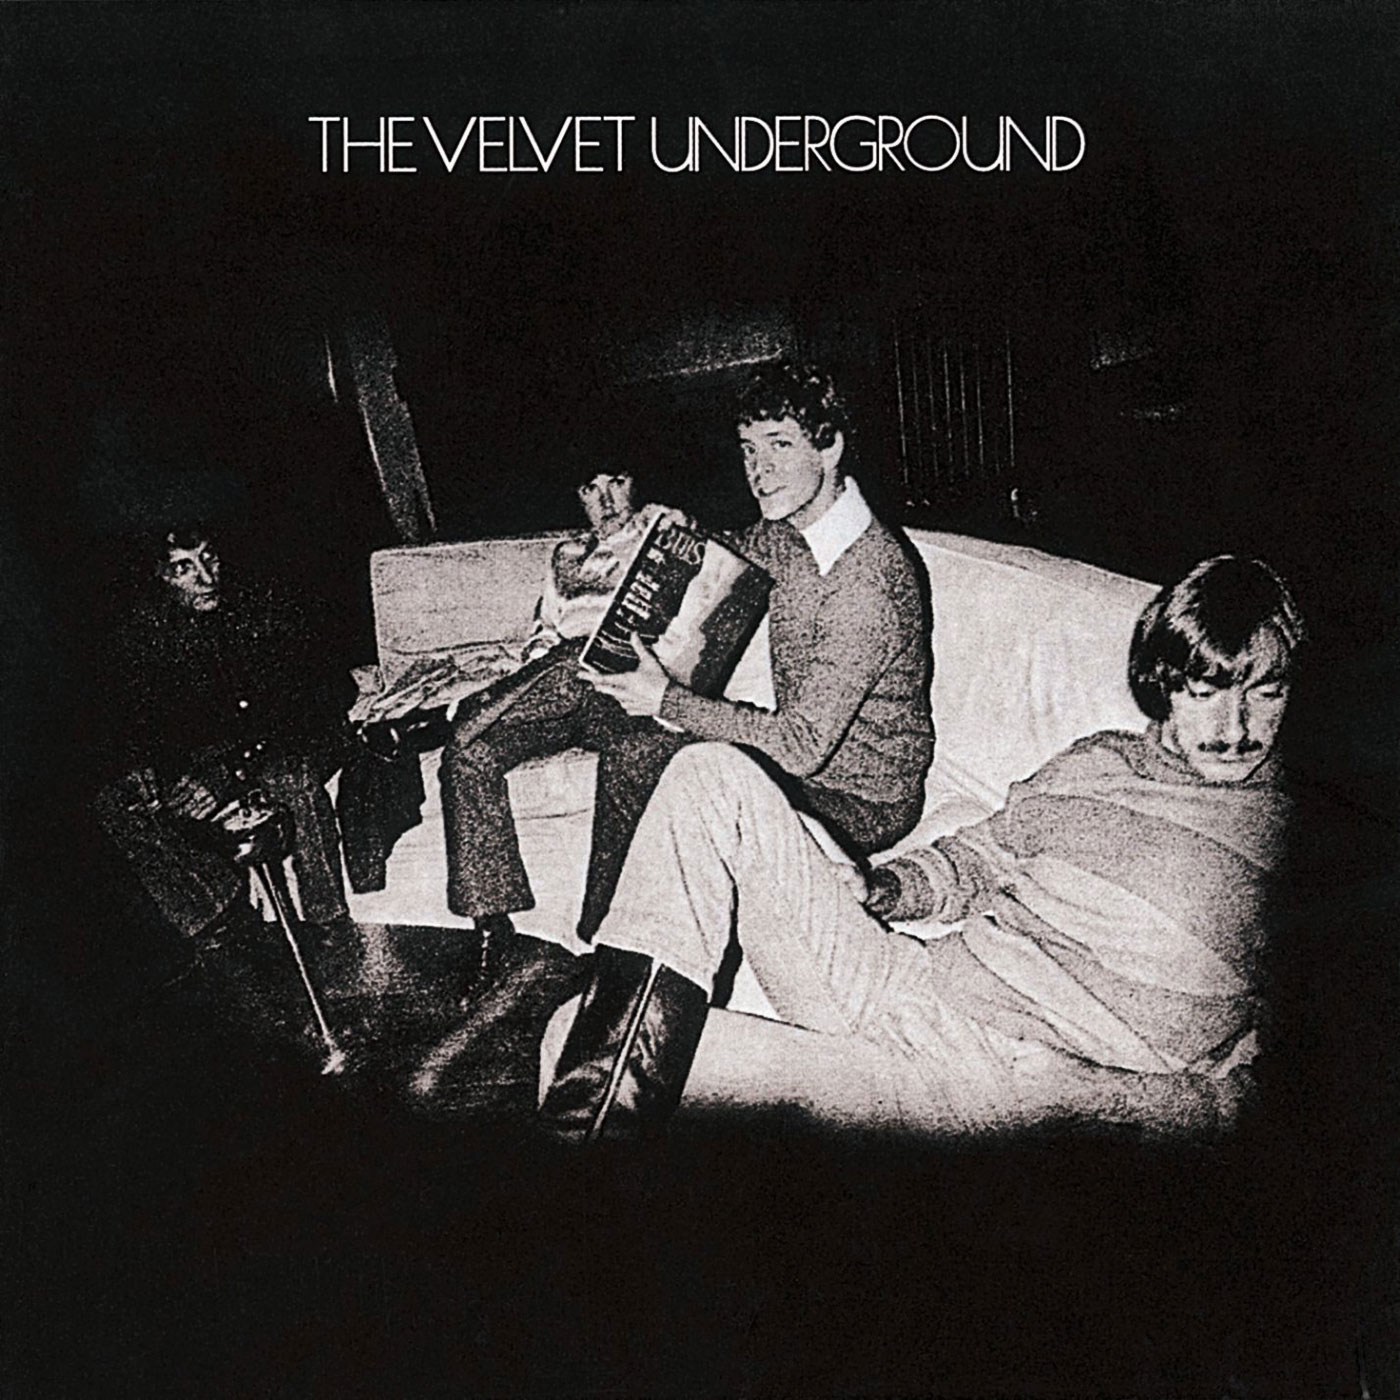 153 The Velvet Underground – The Velvet Underground